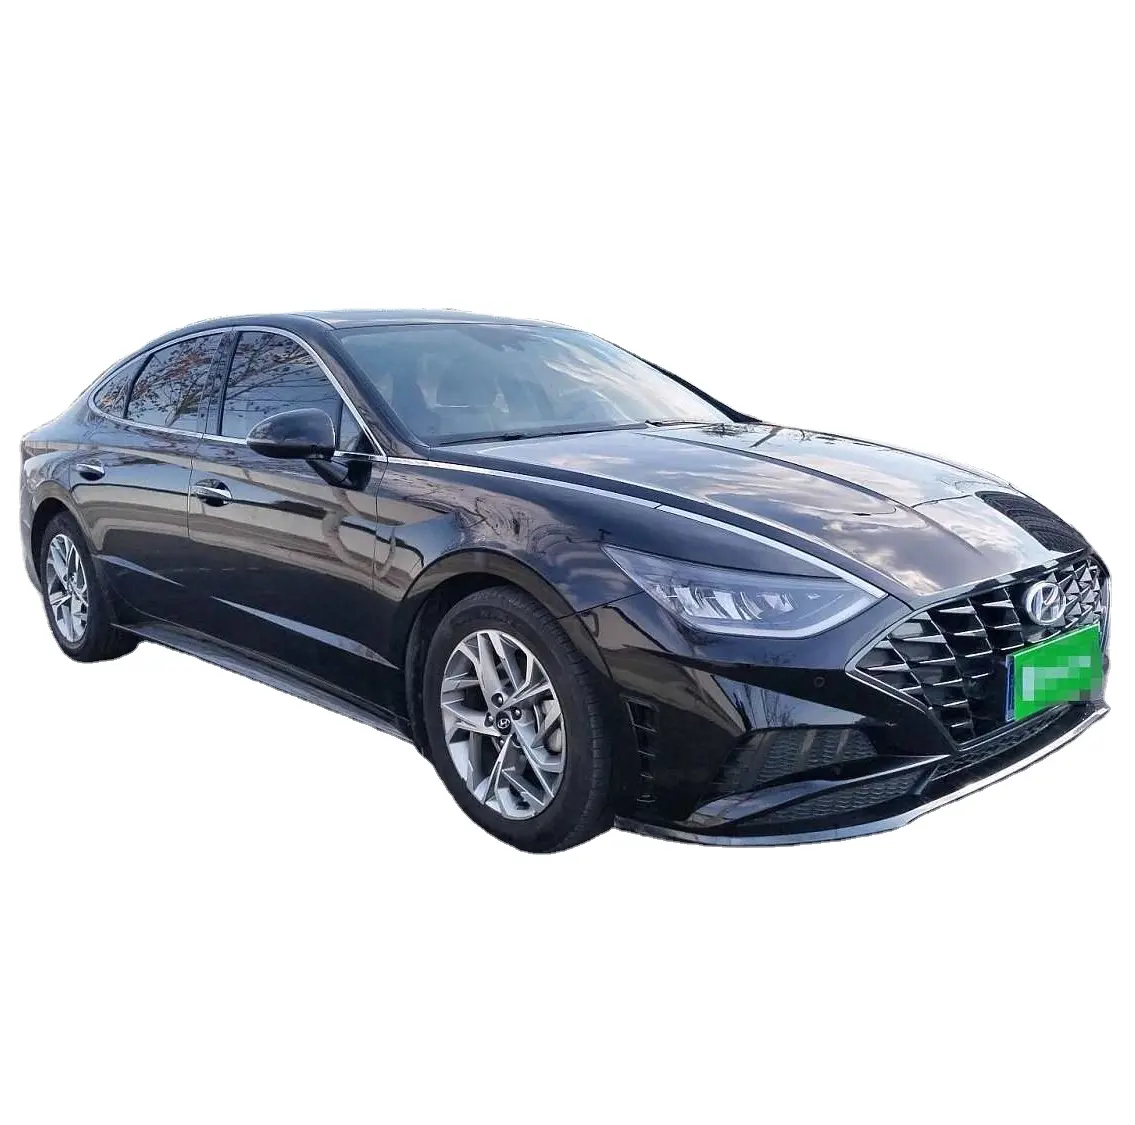 Depósito precio barato Hyundai Sonata 2021 2022 2023 nuevo coche gasolina automóvil versión hecha en China coches populares baratos venta